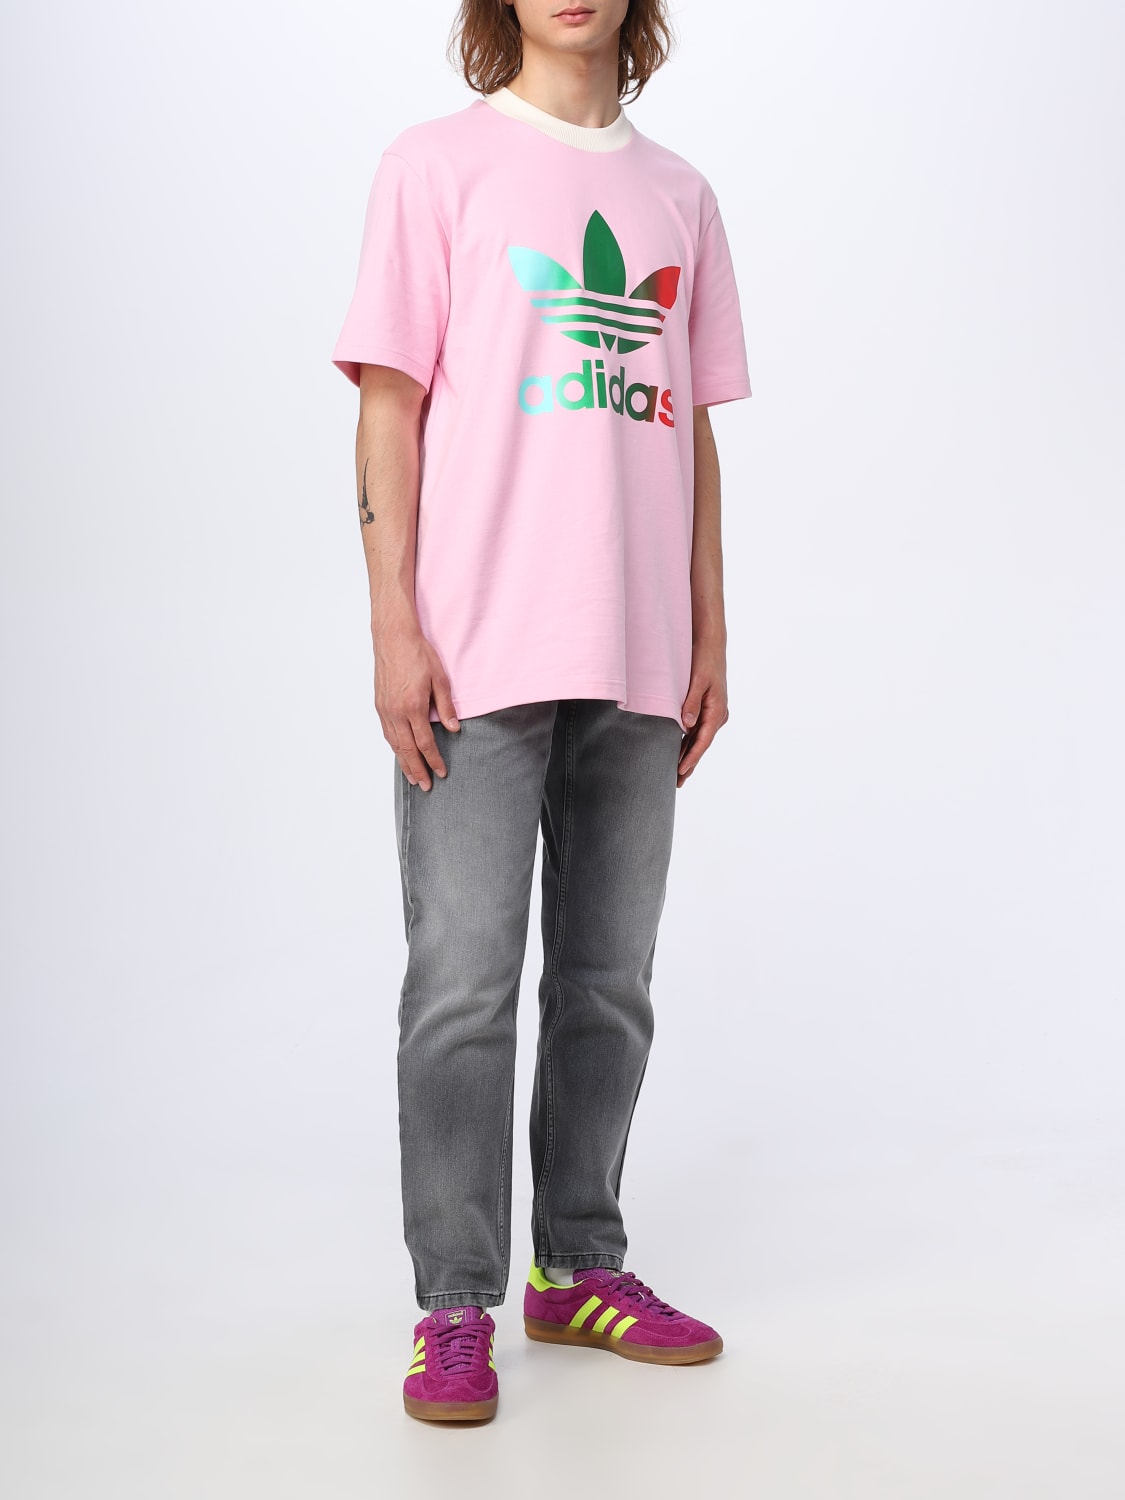 Corresponsal hombro Fuera ADIDAS ORIGINALS: Camiseta para hombre, Rosa | Camiseta Adidas Originals  IP6968 en línea en GIGLIO.COM